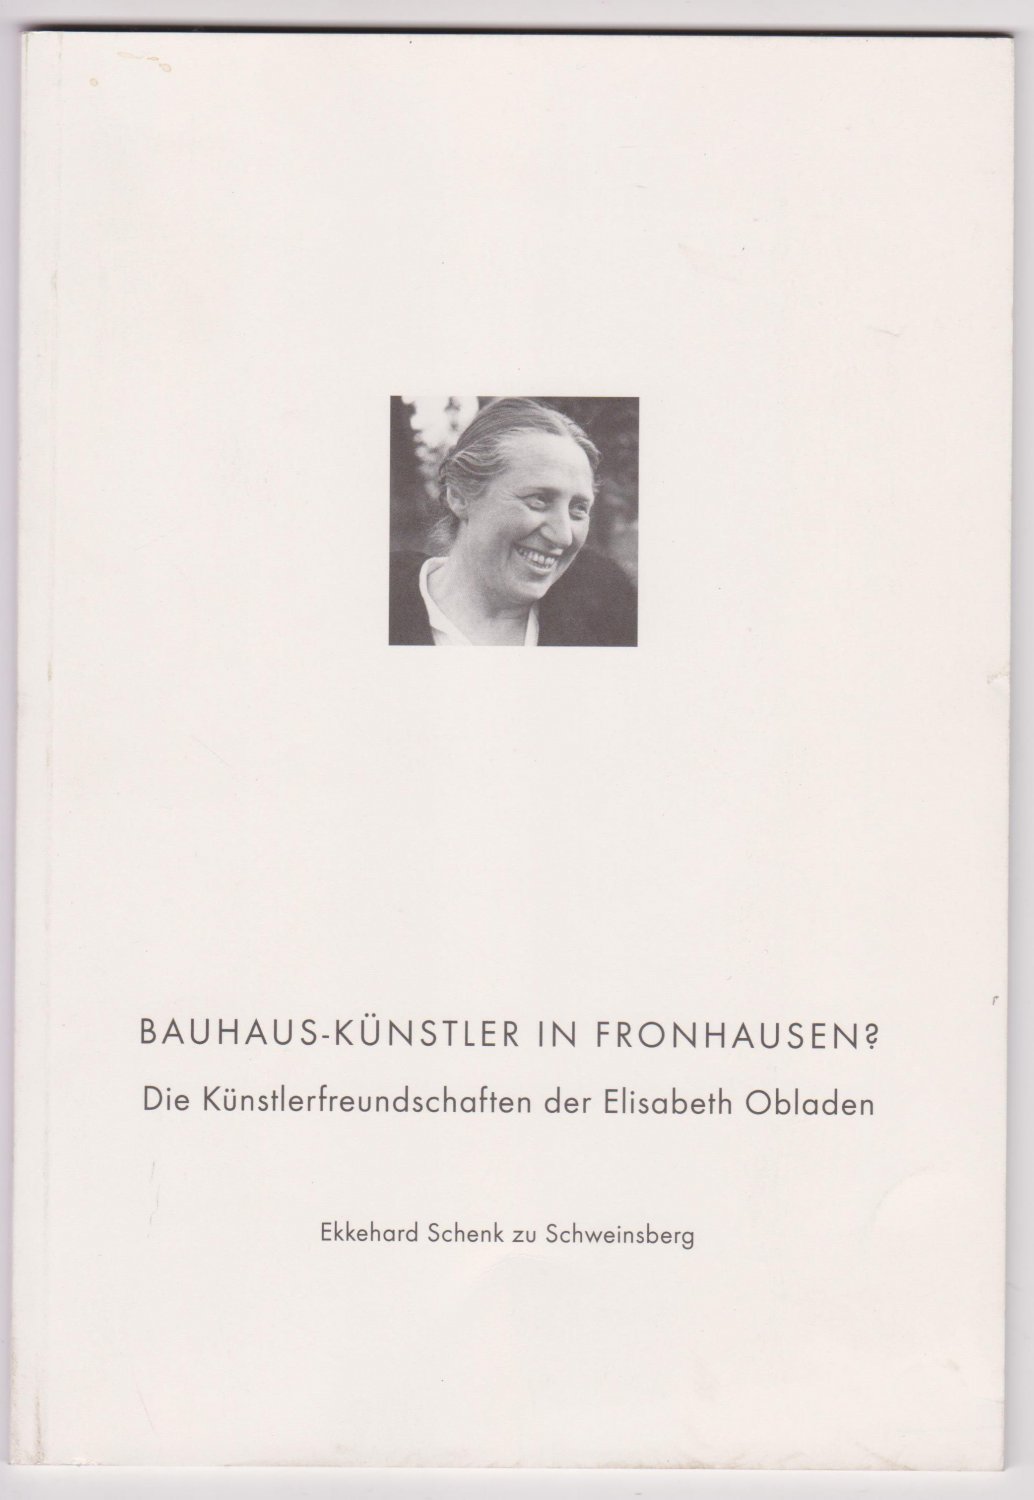 SCHENK ZU SCHWEINSBERG, Ekkehard:  Bauhaus-Künstler in Fronhausen? Die Künstlerfreundschaften der Elisabeth Obladen. 